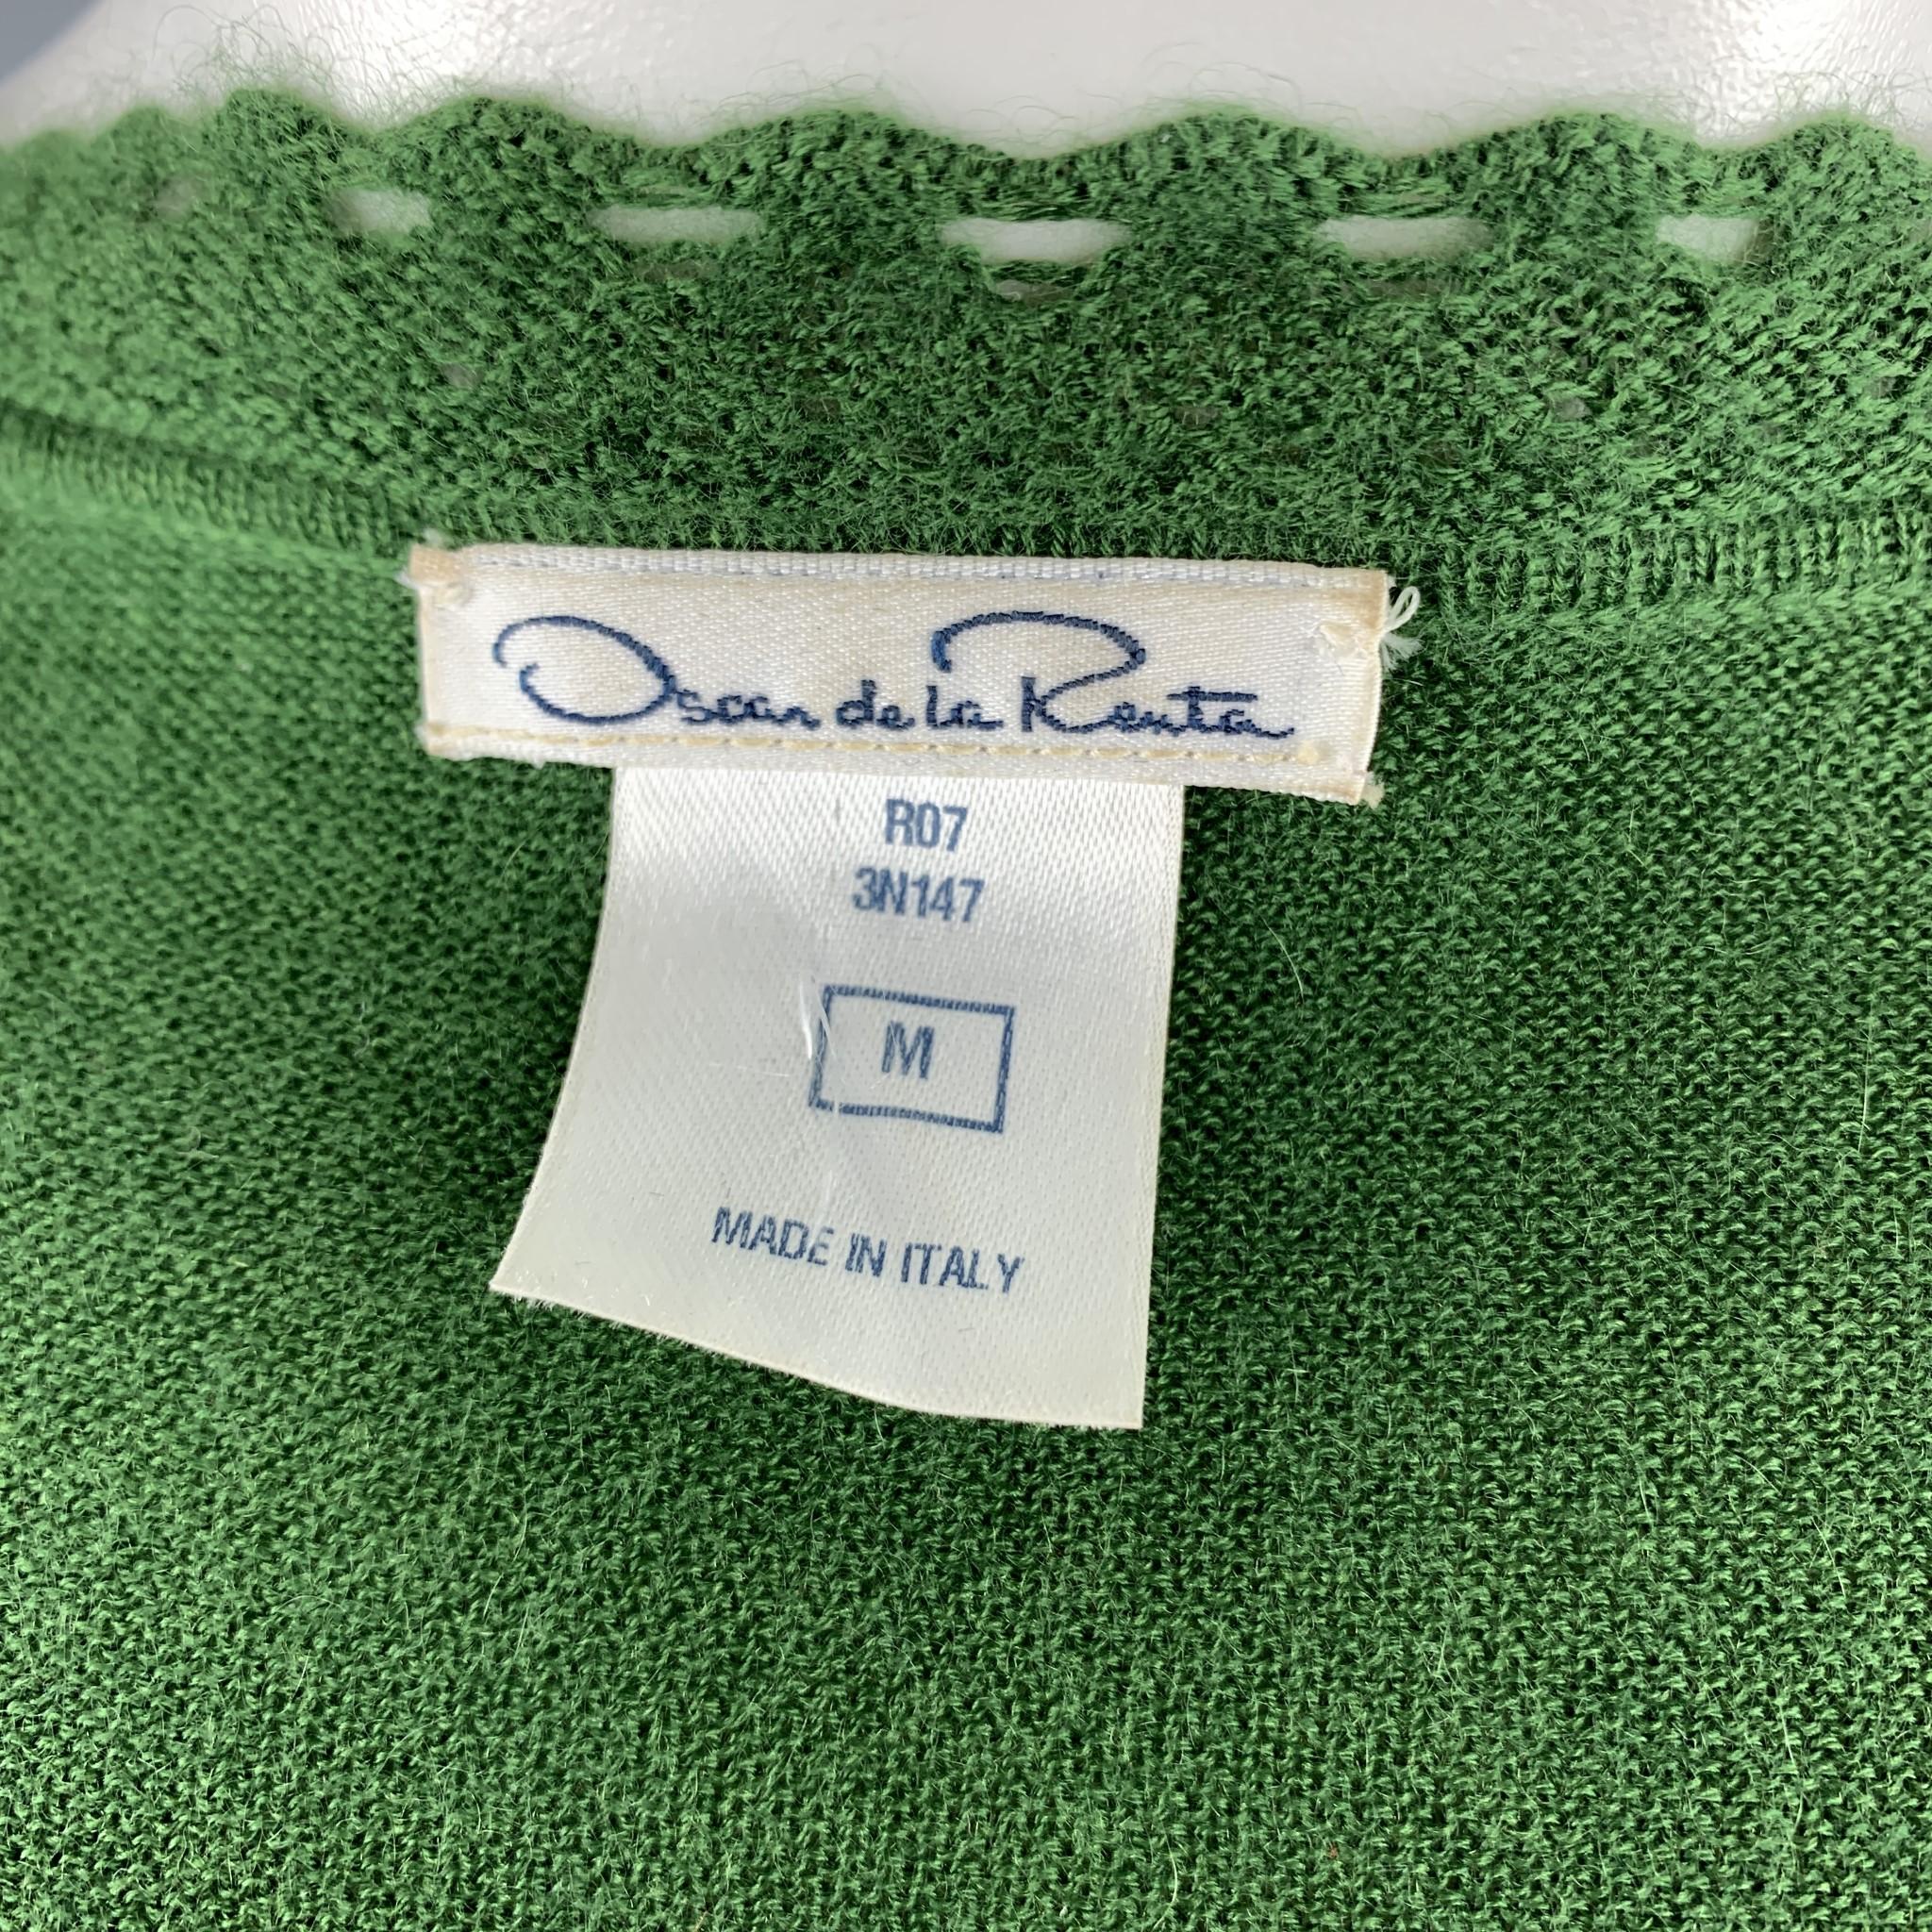 OSCAR DE LA RENTA Size M Green Cashmere / Silk Lace Trim Bolero Cardigan 3